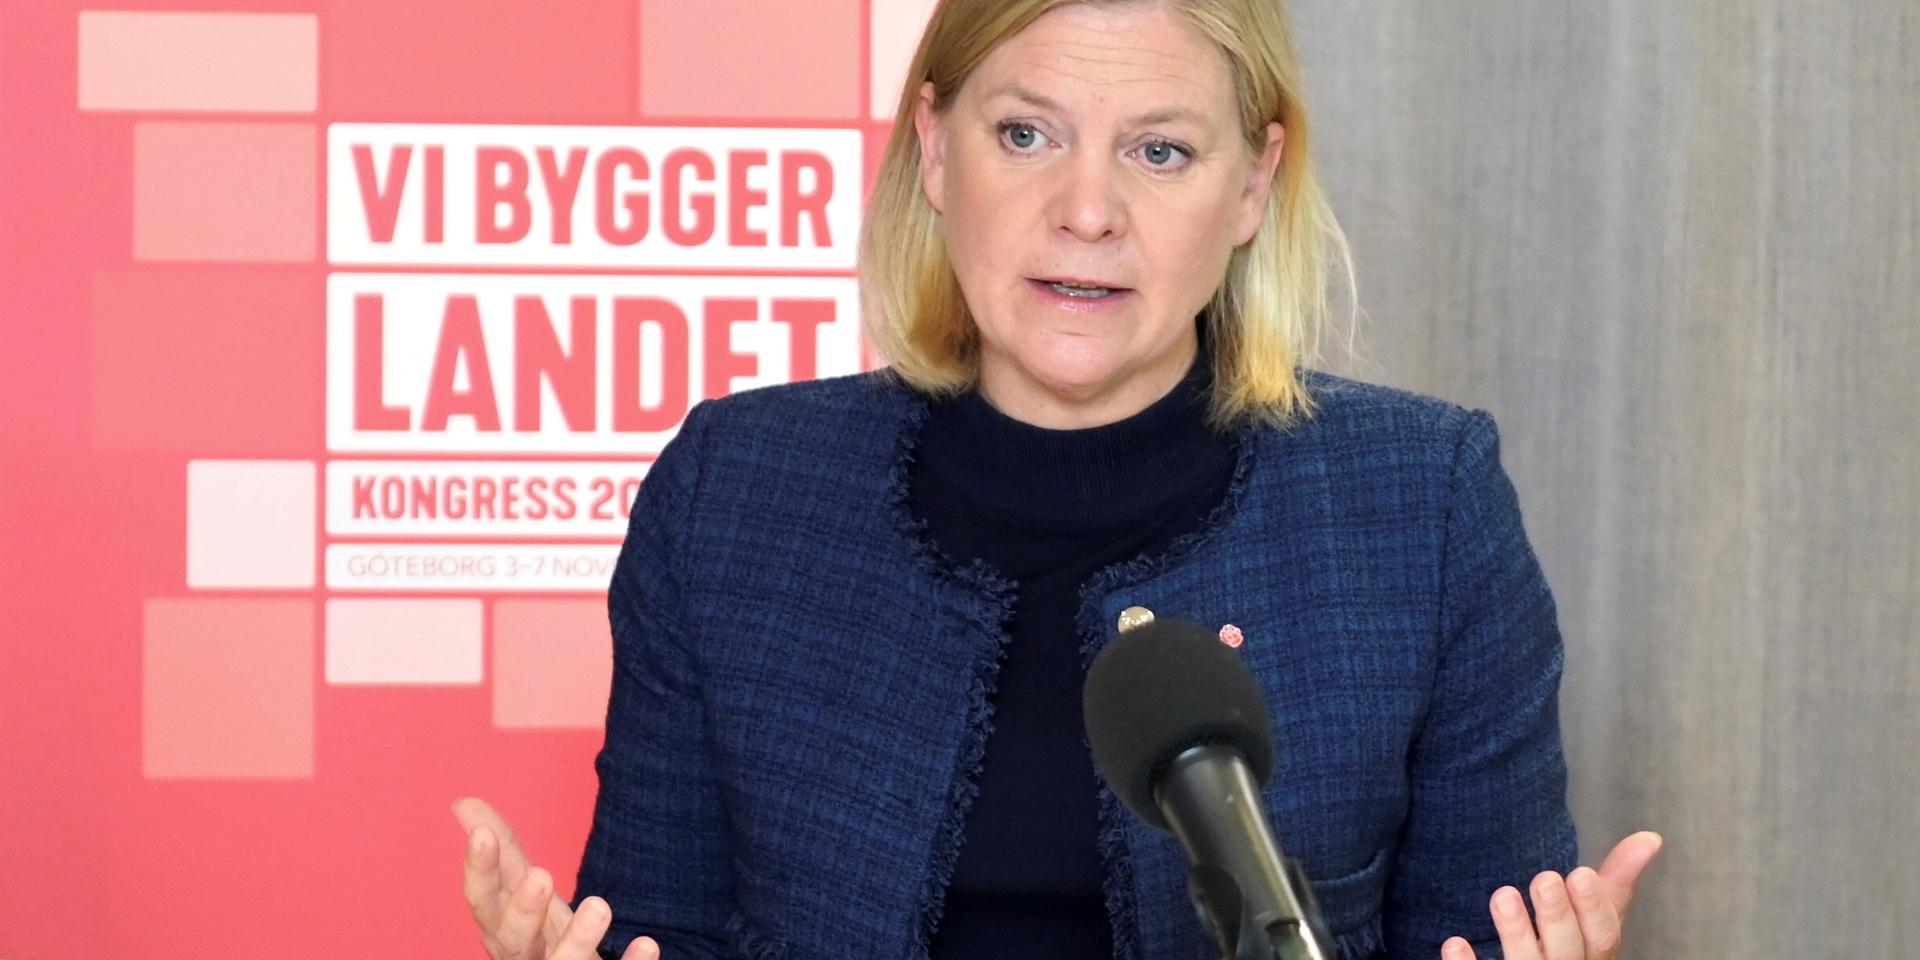 Halland var först ut att nominera Magdalena Andersson till partiledarposten. På kongressen i helgen sker valet av ny partiledare för Socialdemokraterna.